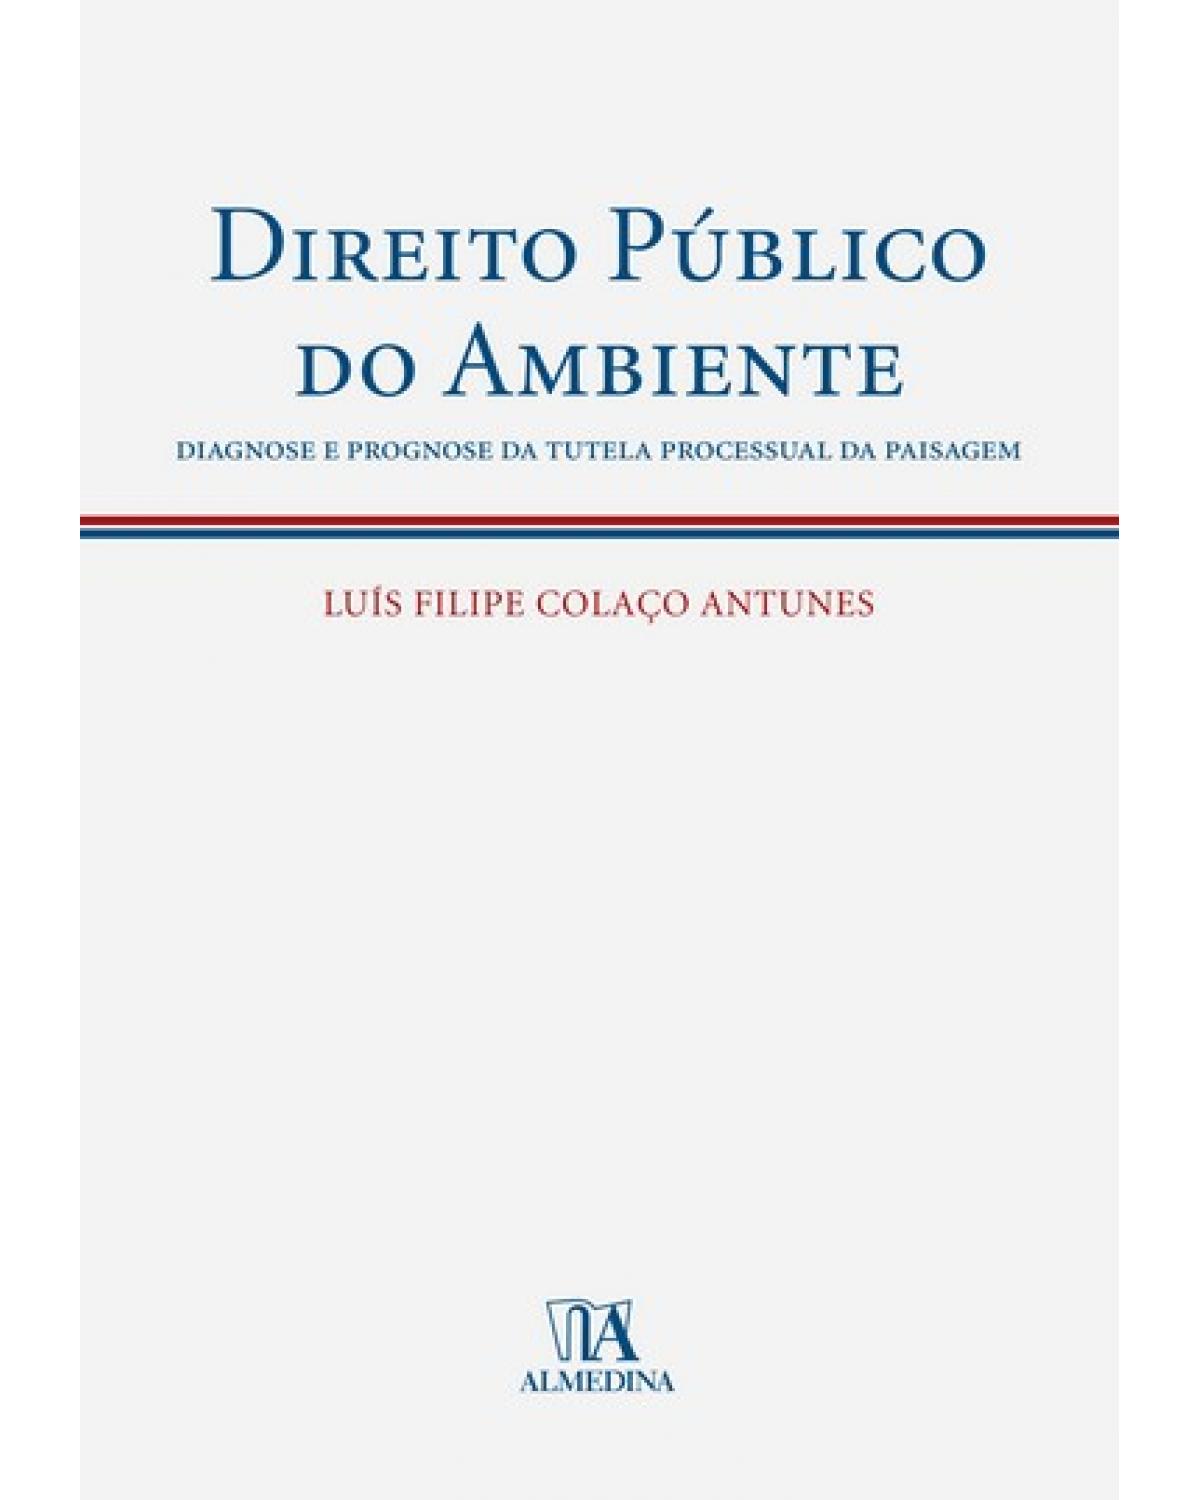 Direito público do ambiente - diagnose e prognose da tutela processual da paisagem - 1ª Edição | 2008